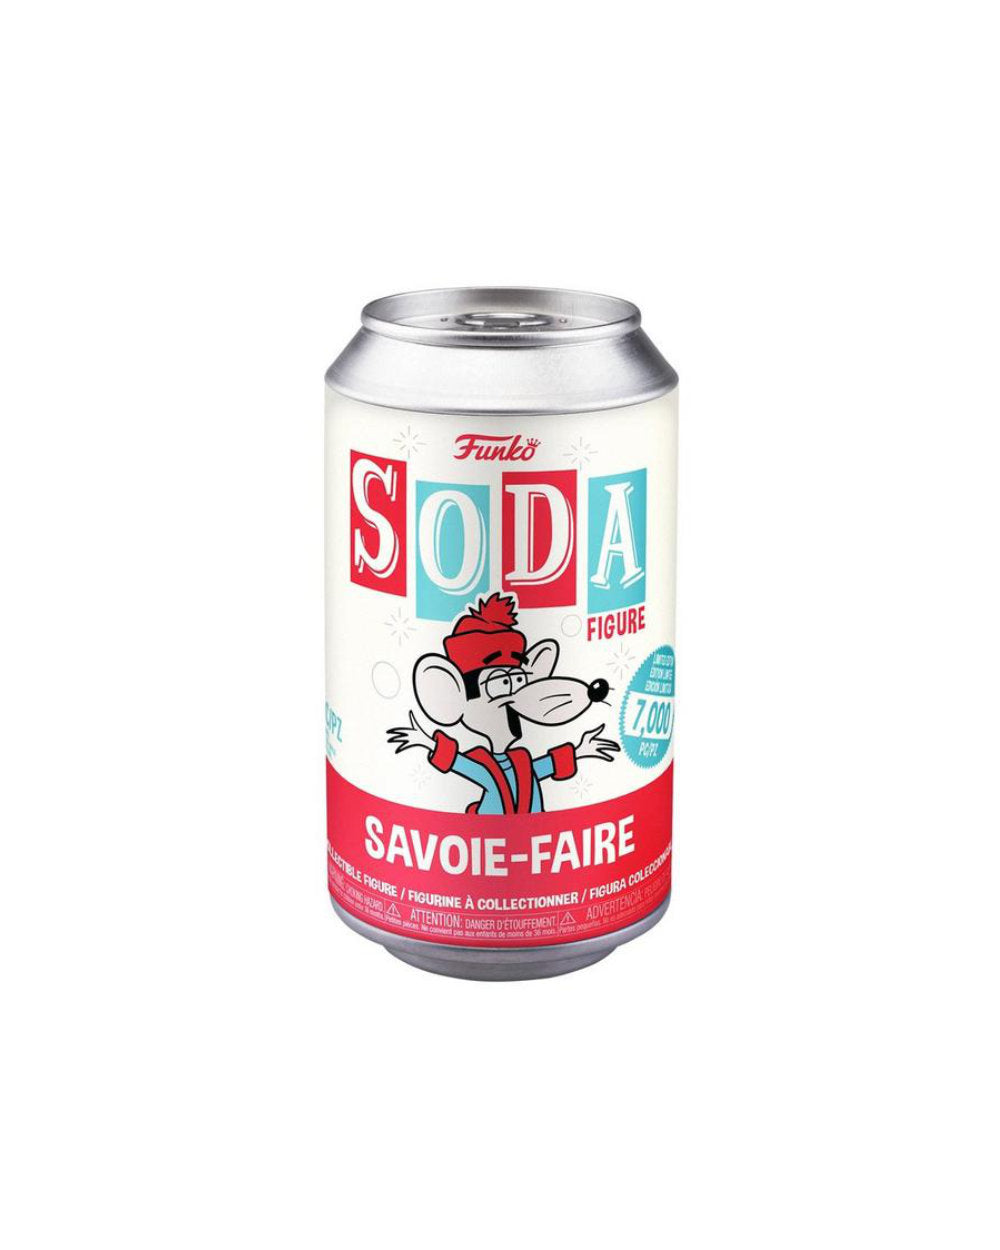 Funko Soda - Klondike Kat Savoie-Faire - The Pink a la Mode - Funko - The Pink a la Mode